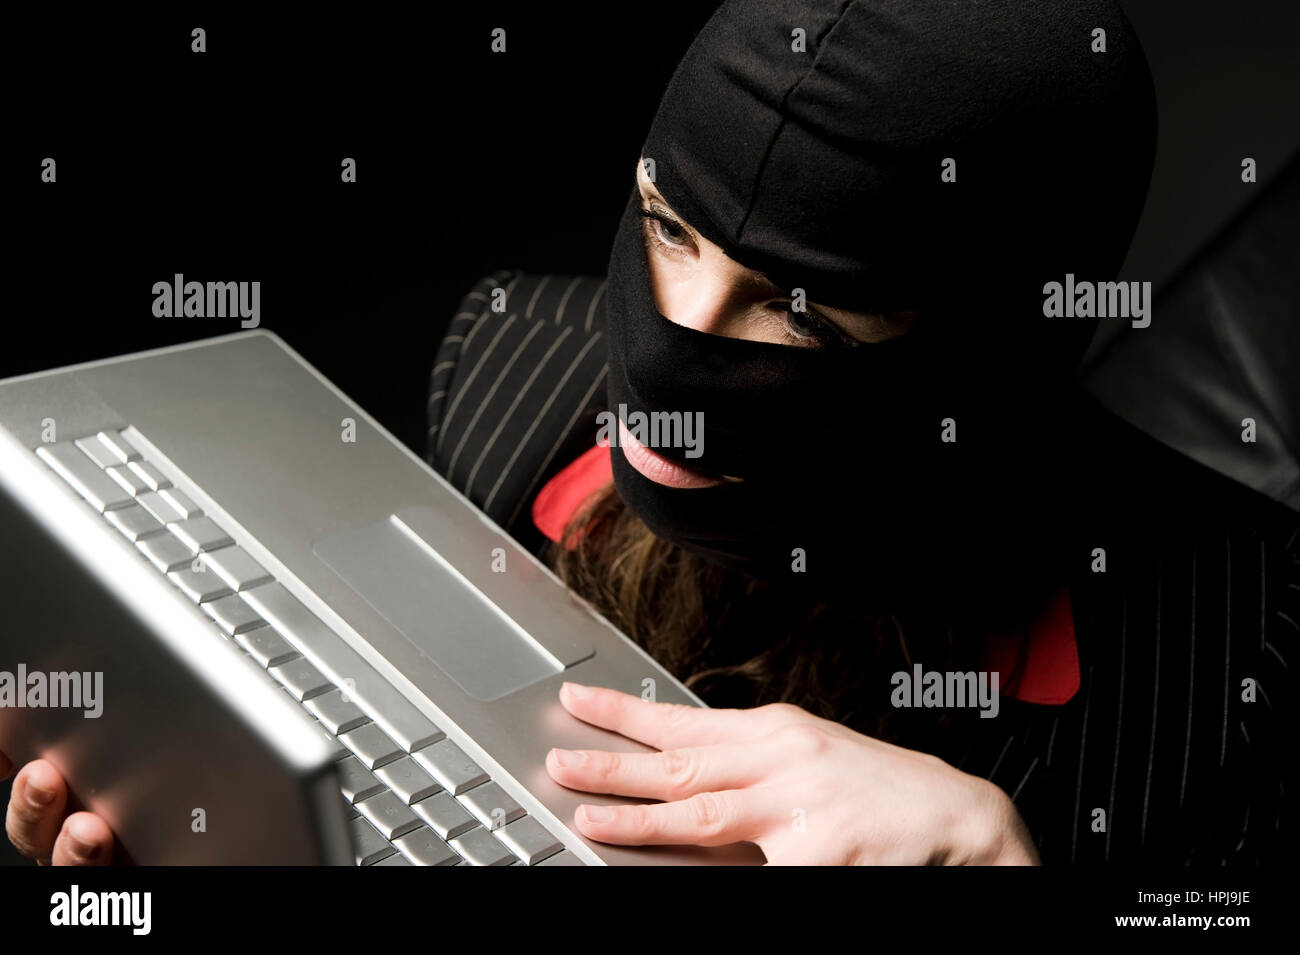 Model released , Einbrecherin mit Laptop, Wirtschaftsspionage - symbolic for data piracy Stock Photo